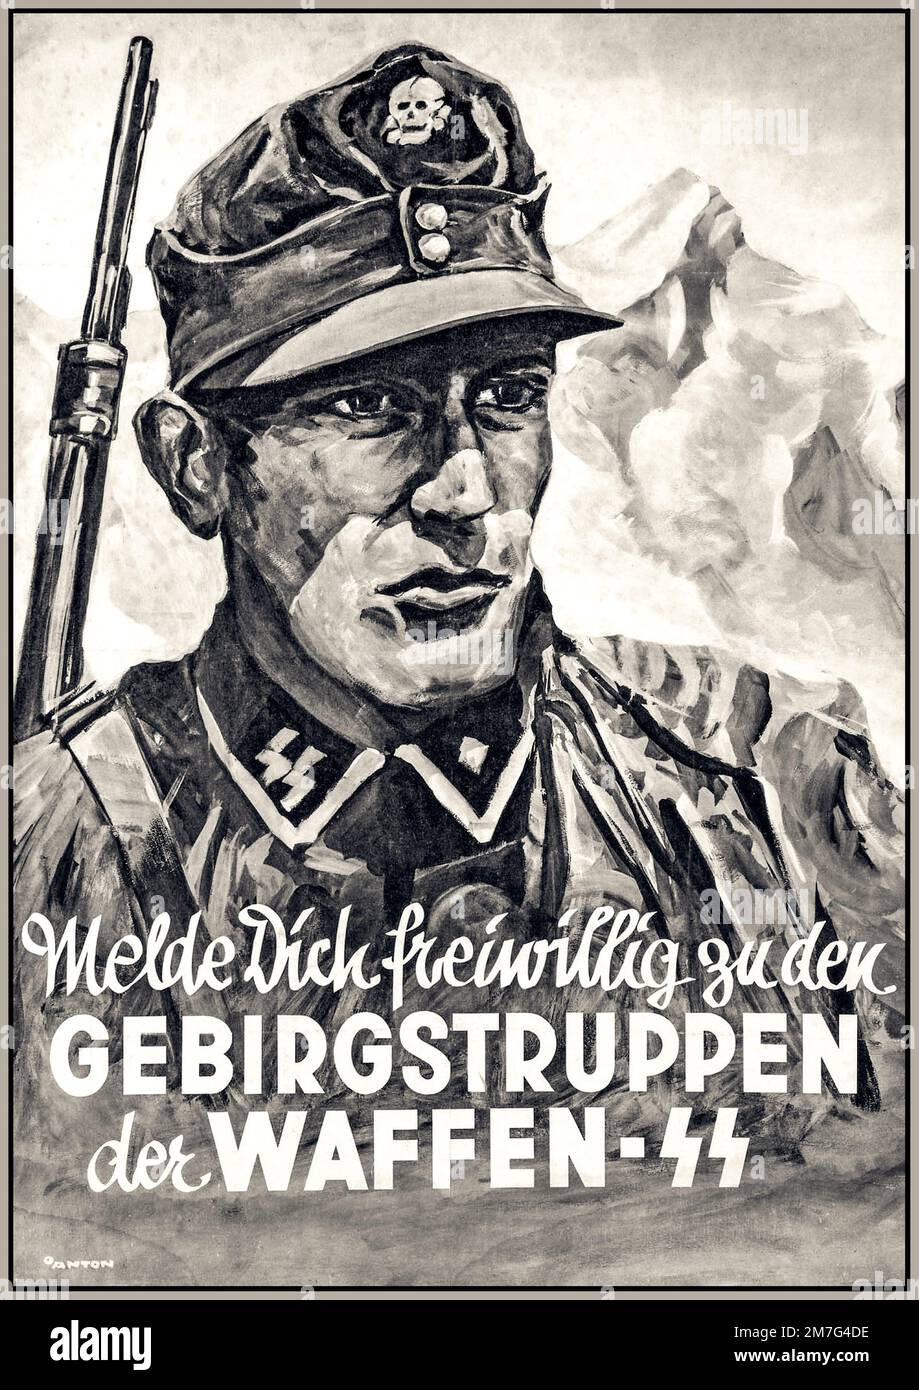 WAFFEN SS affiche de recrutement de propagande nazie pour les troupes de montagne du Waffen SS WW2 GEBIRGSTRUPPEN Der WAFFEN SS Banque D'Images